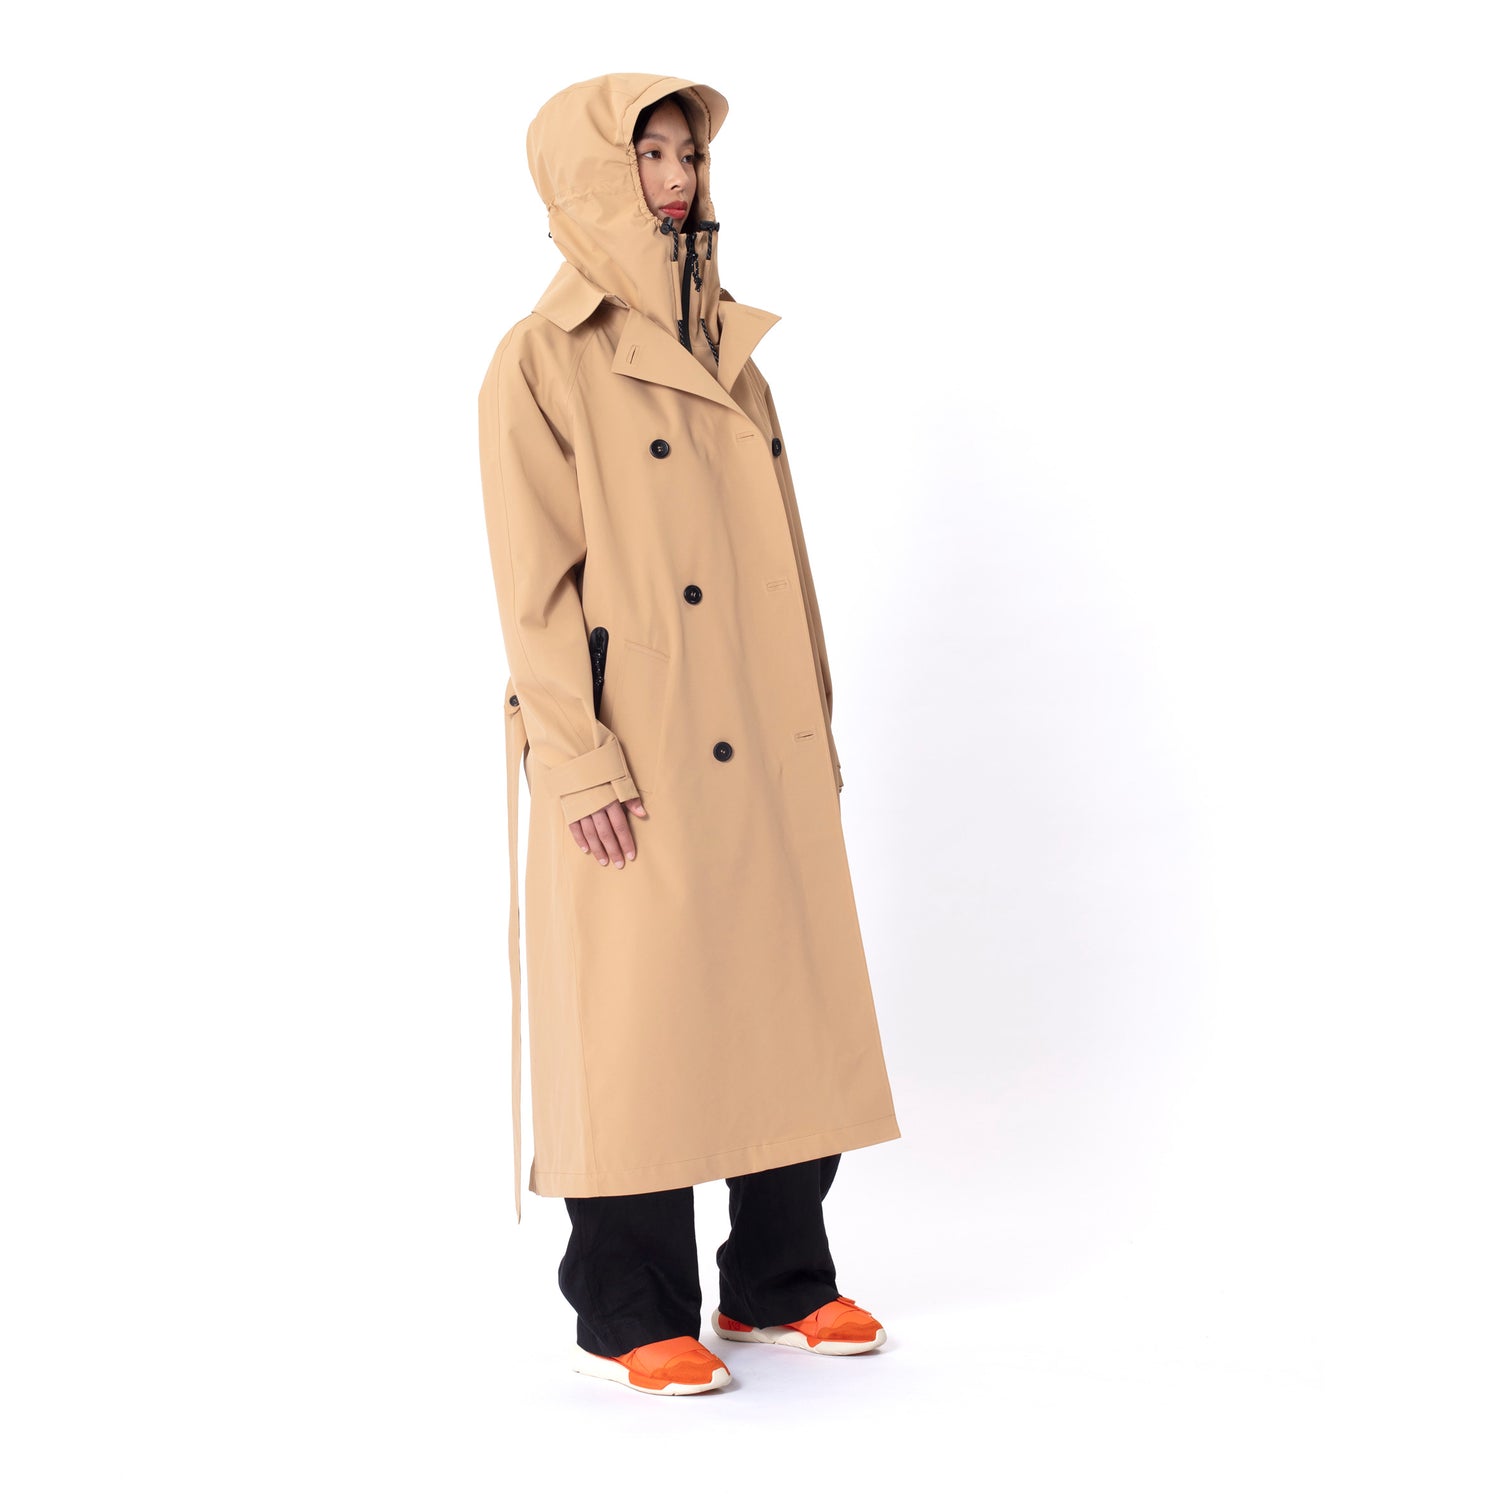 GOFRANCK-SLUSH-Product-Image-women-rainjacket